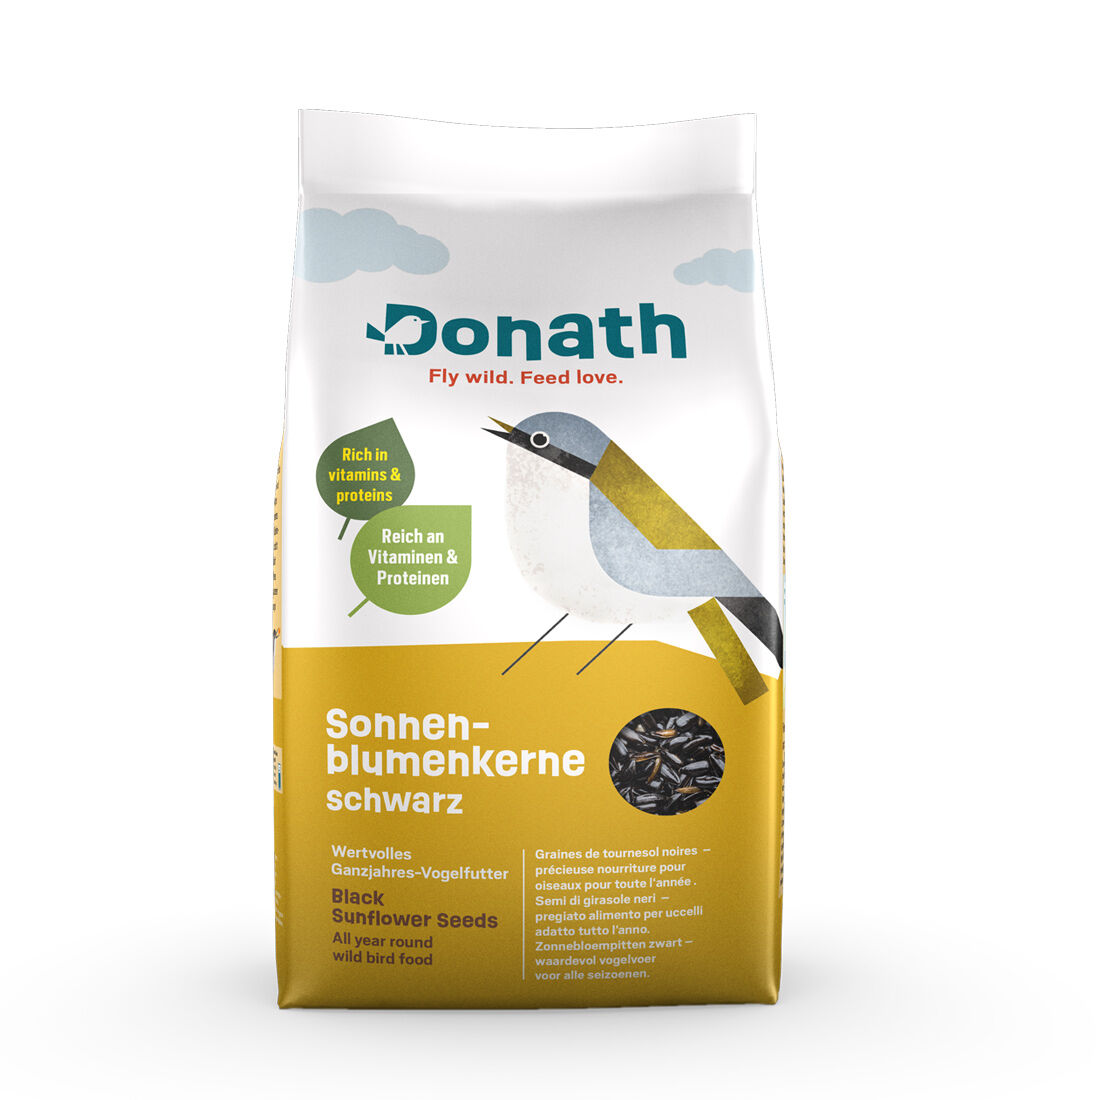 Donath-Sonnenblumenkerne-schwarz-Vogelfutter-Wildvoegel-45-74011